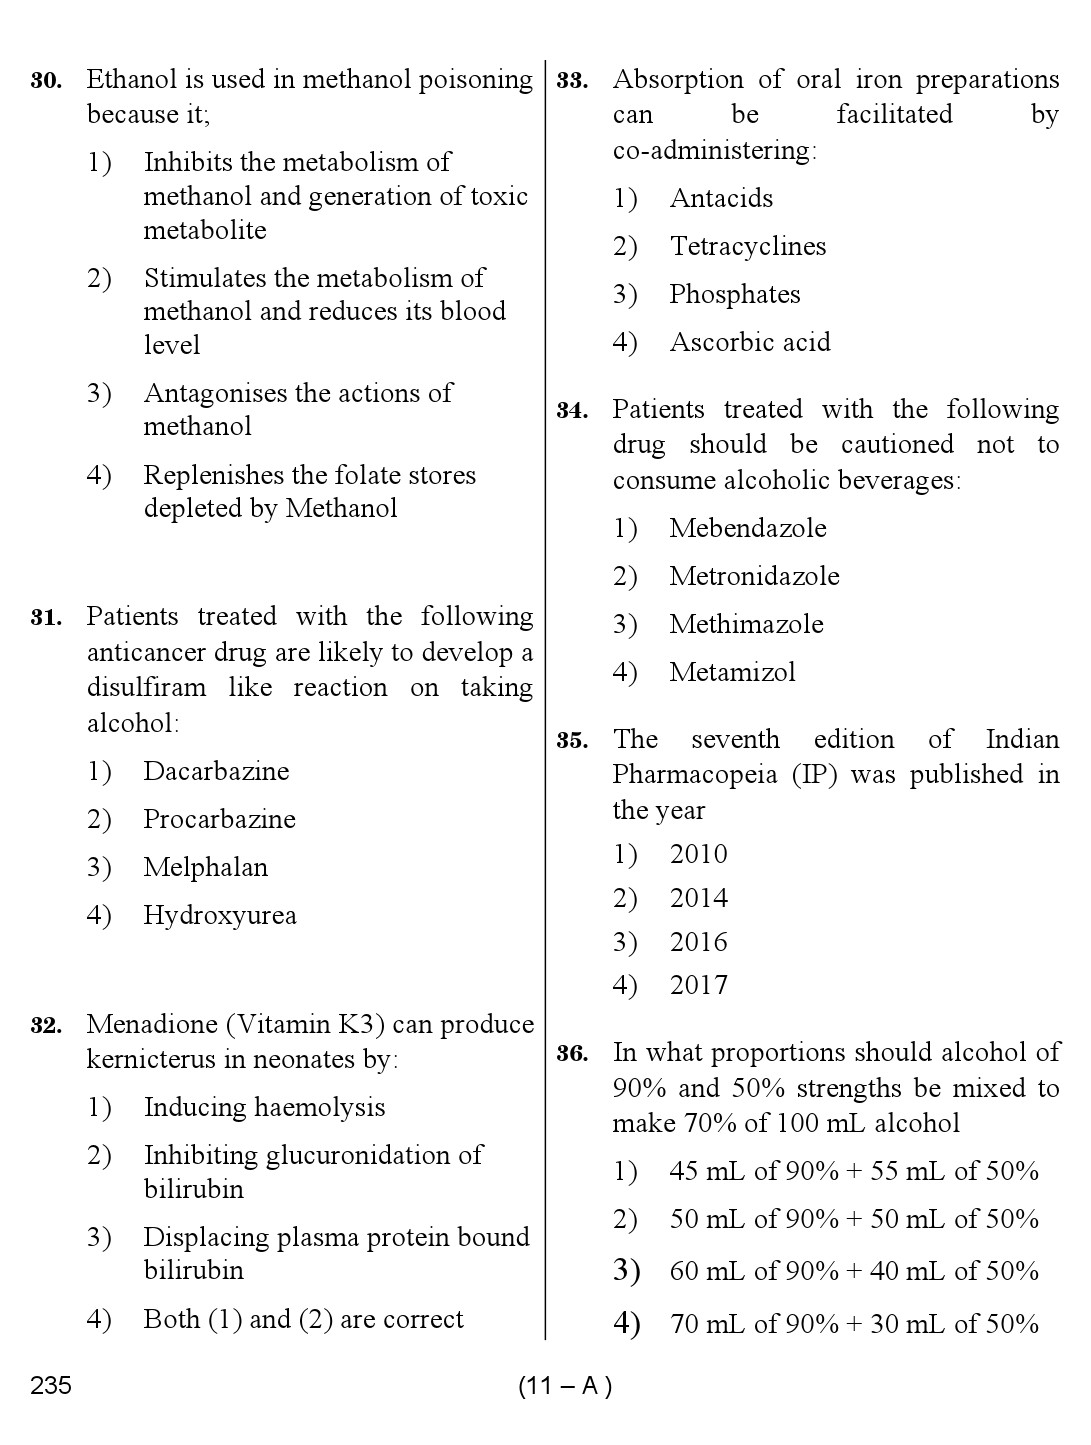 Karnataka PSC Junior Scientific Officer Exam Sample Question Paper 11